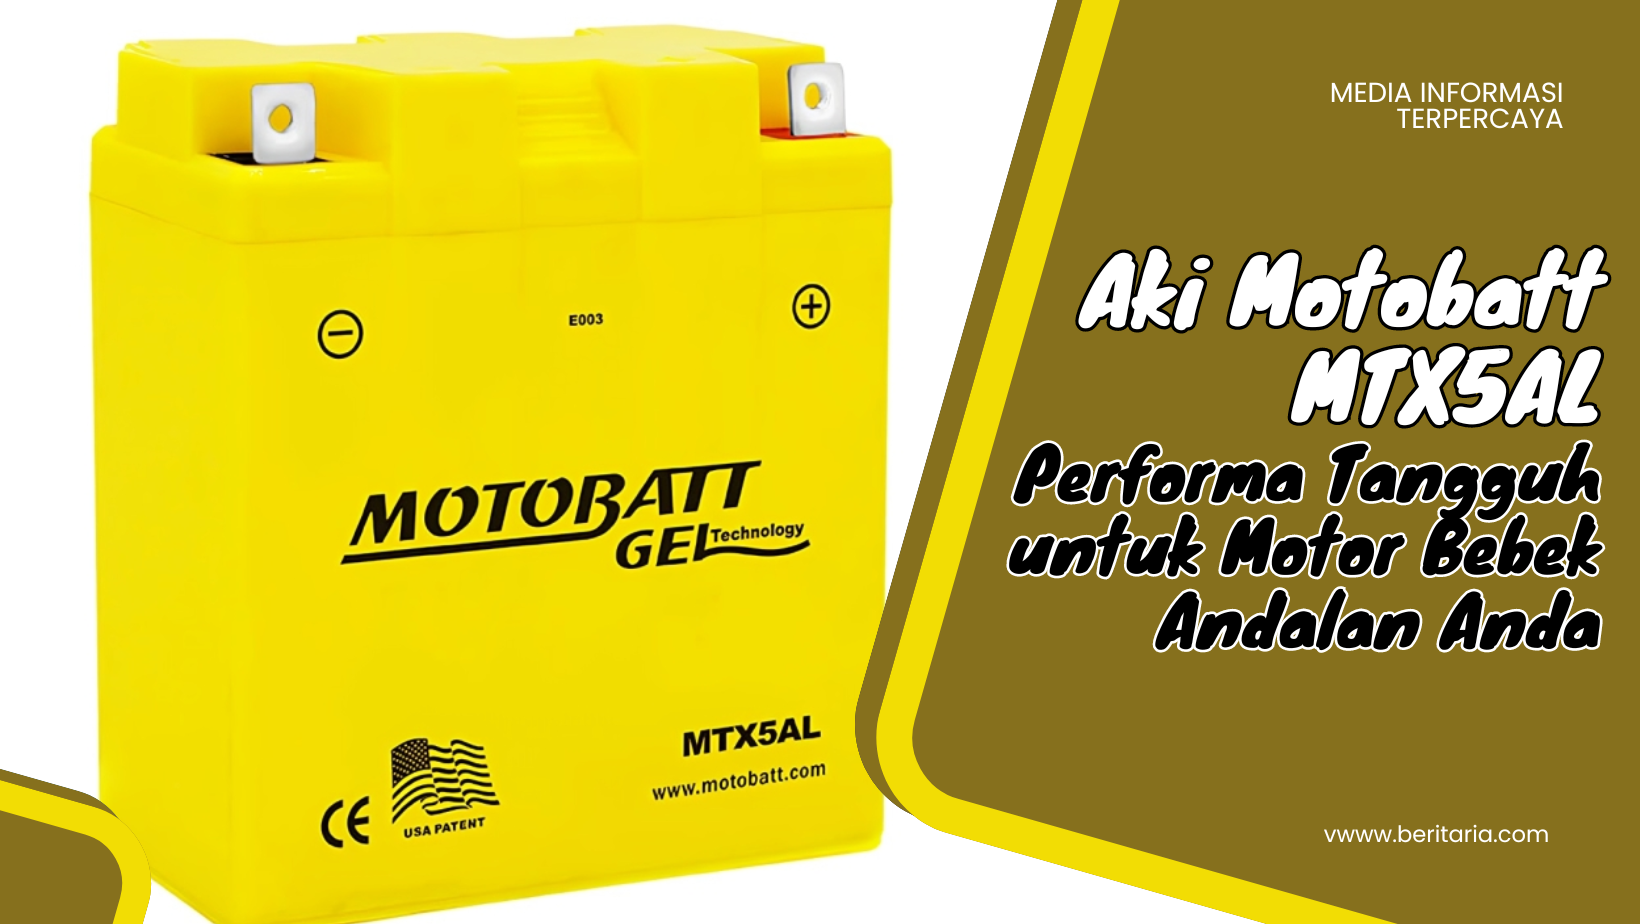 Beritaria.com | Aki Motobatt MTX5AL: Performa Tangguh untuk Motor Bebek Andalan Anda